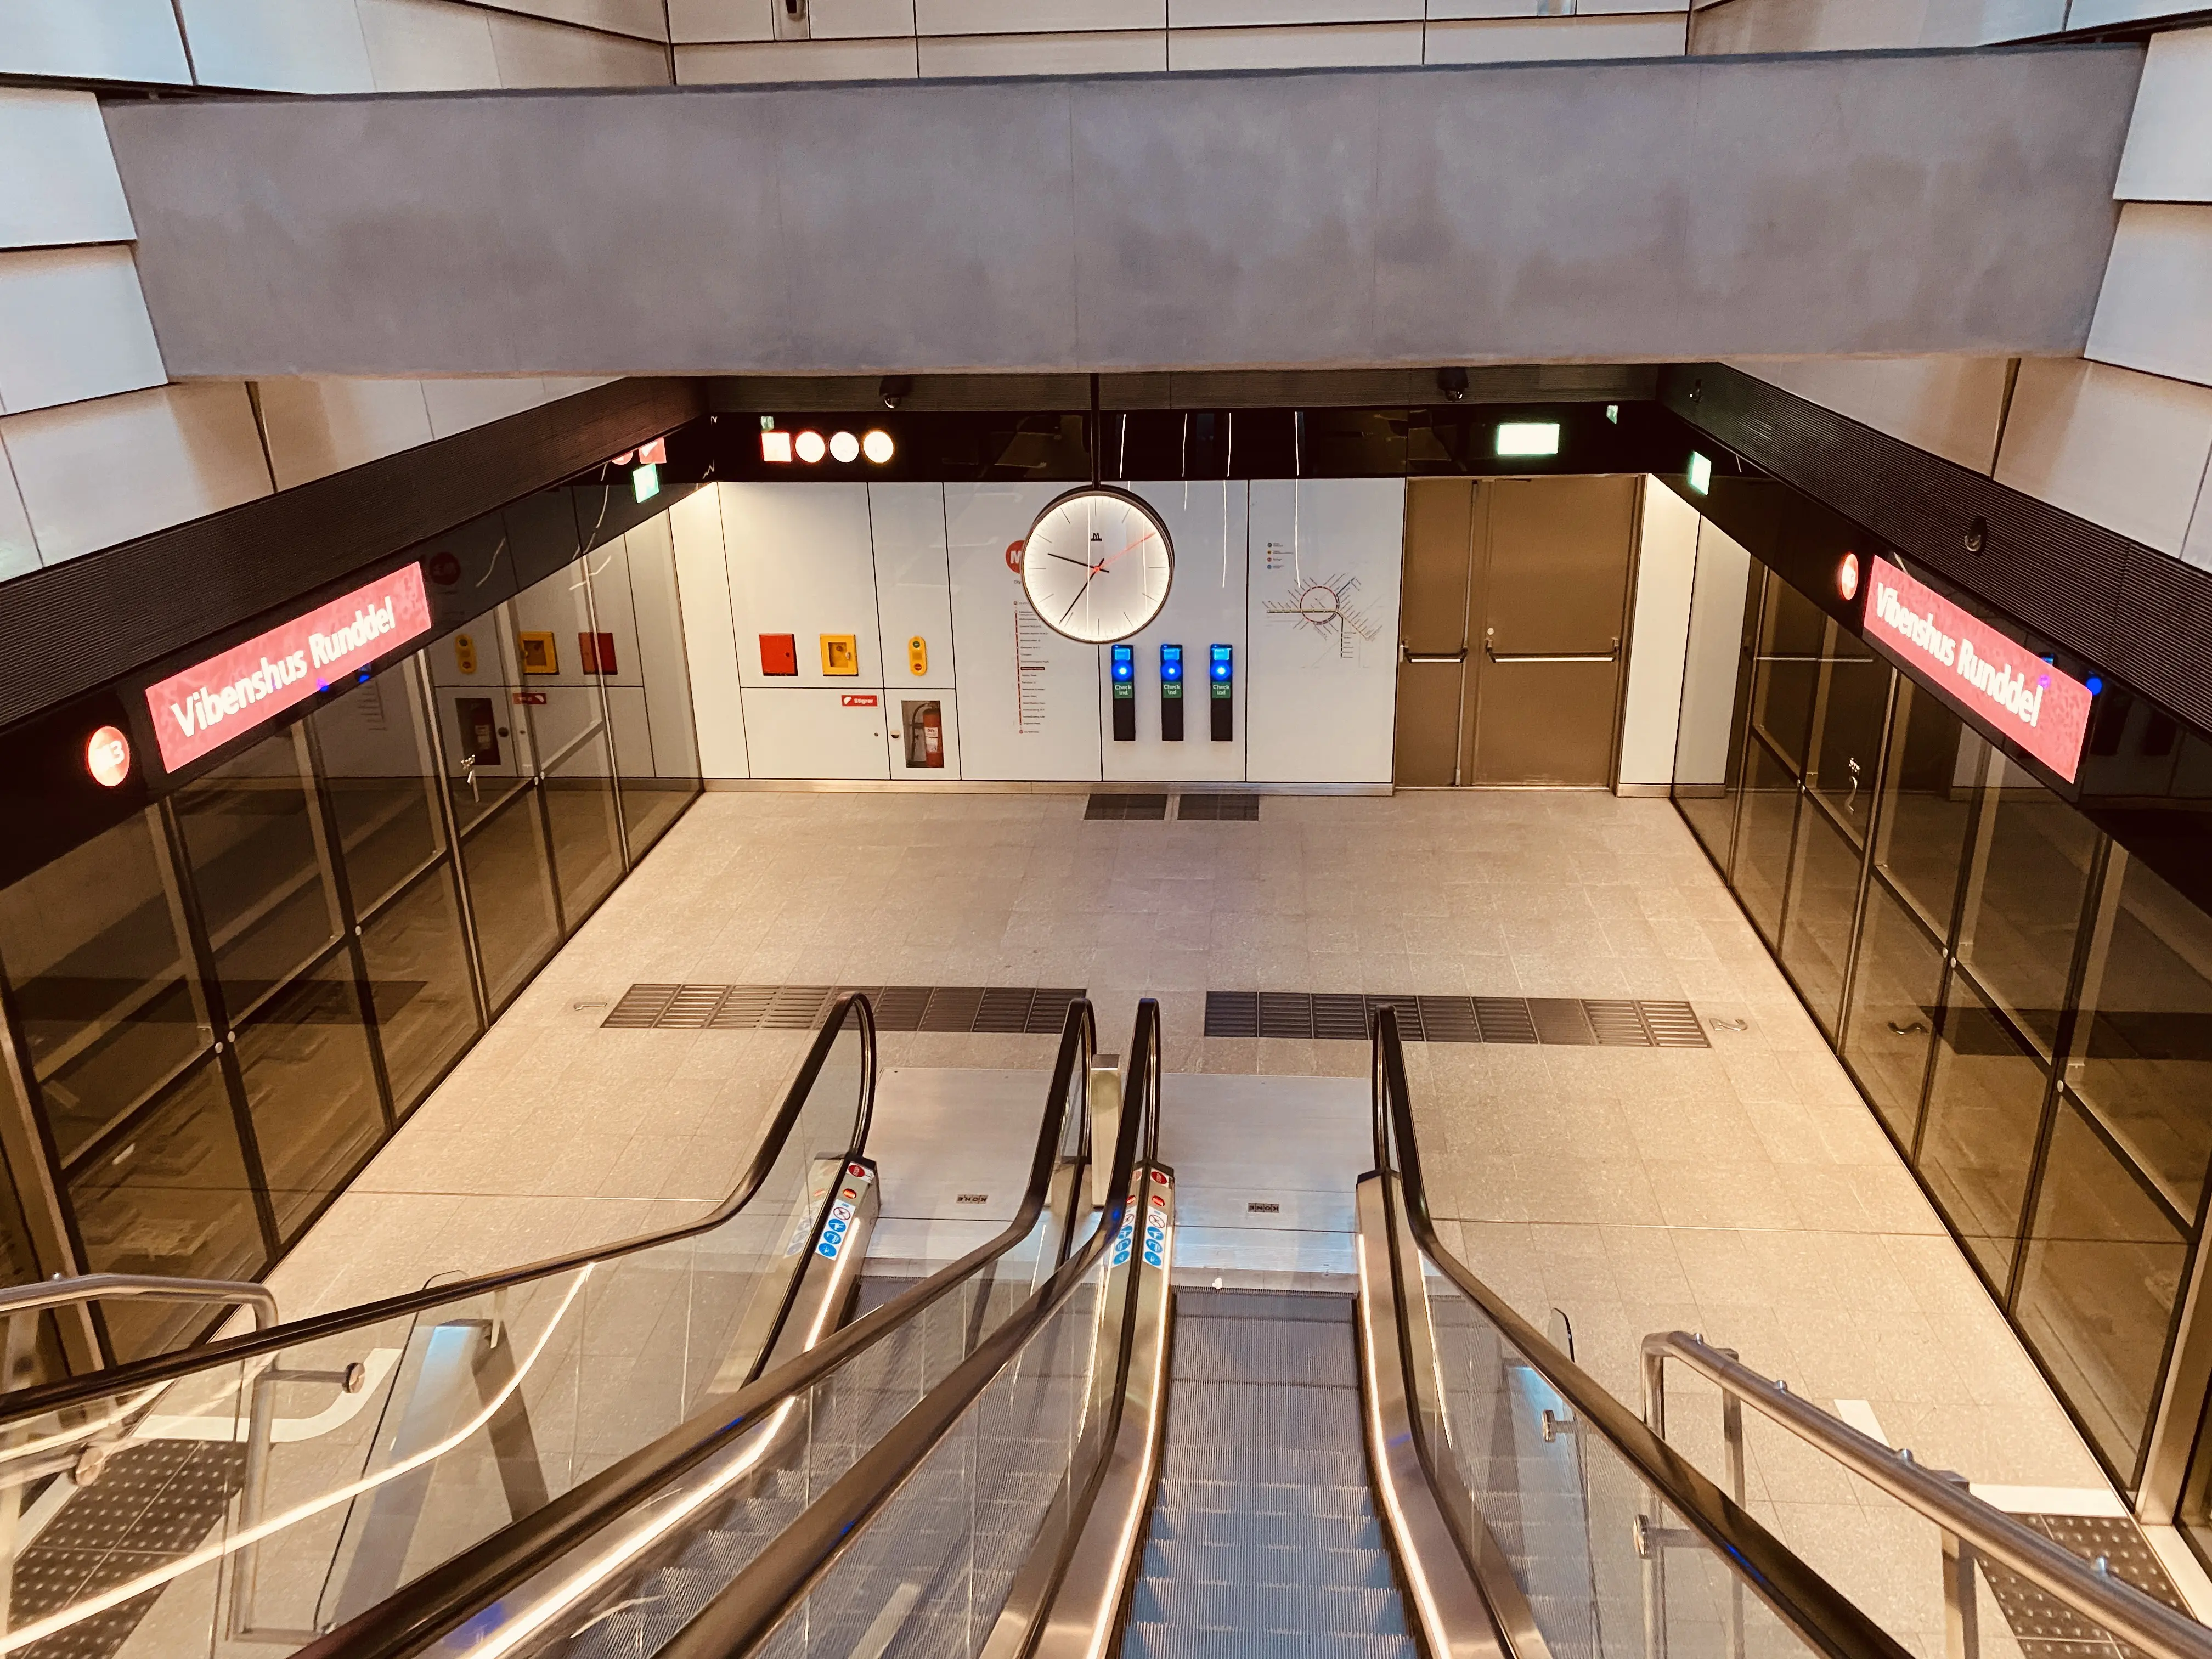 Billede af Vibenshus Runddel Metrostation.